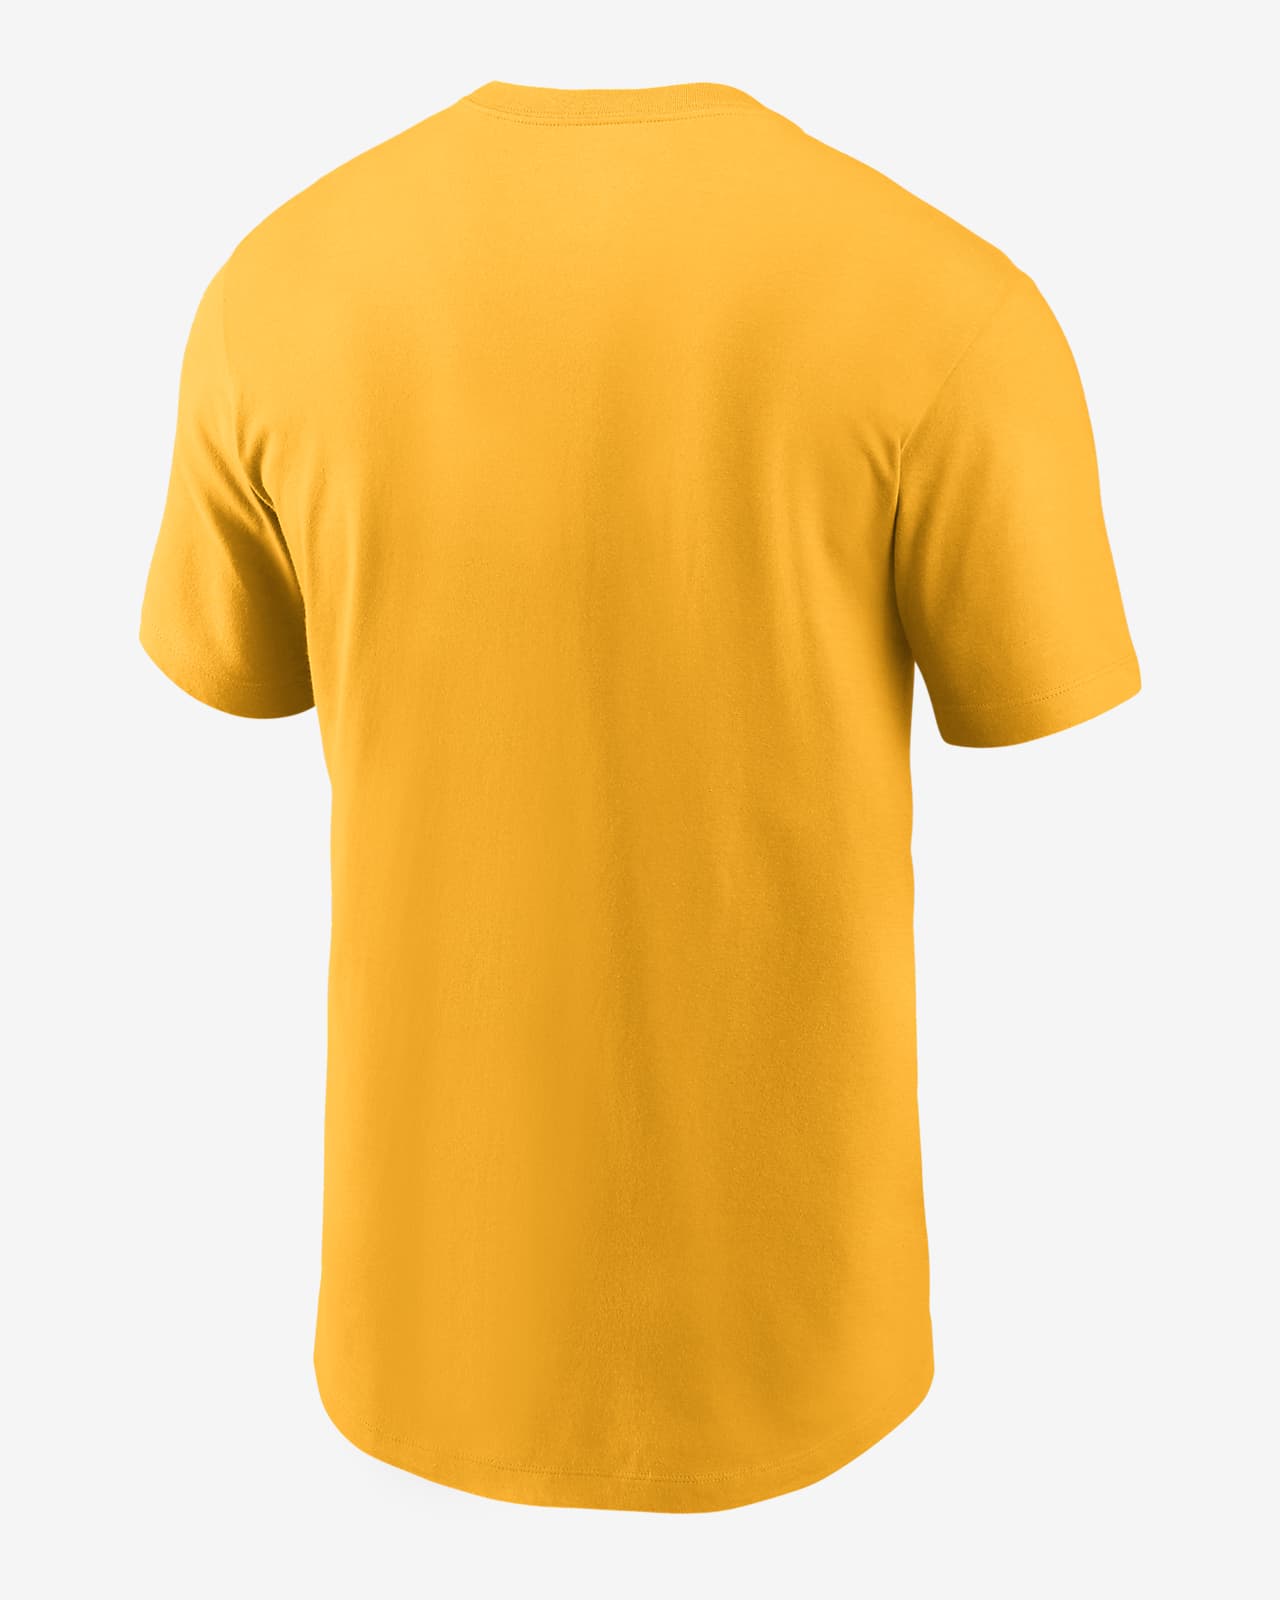 MLB Oakland Athletics T-Shirt/Short Sleeve/Sz L